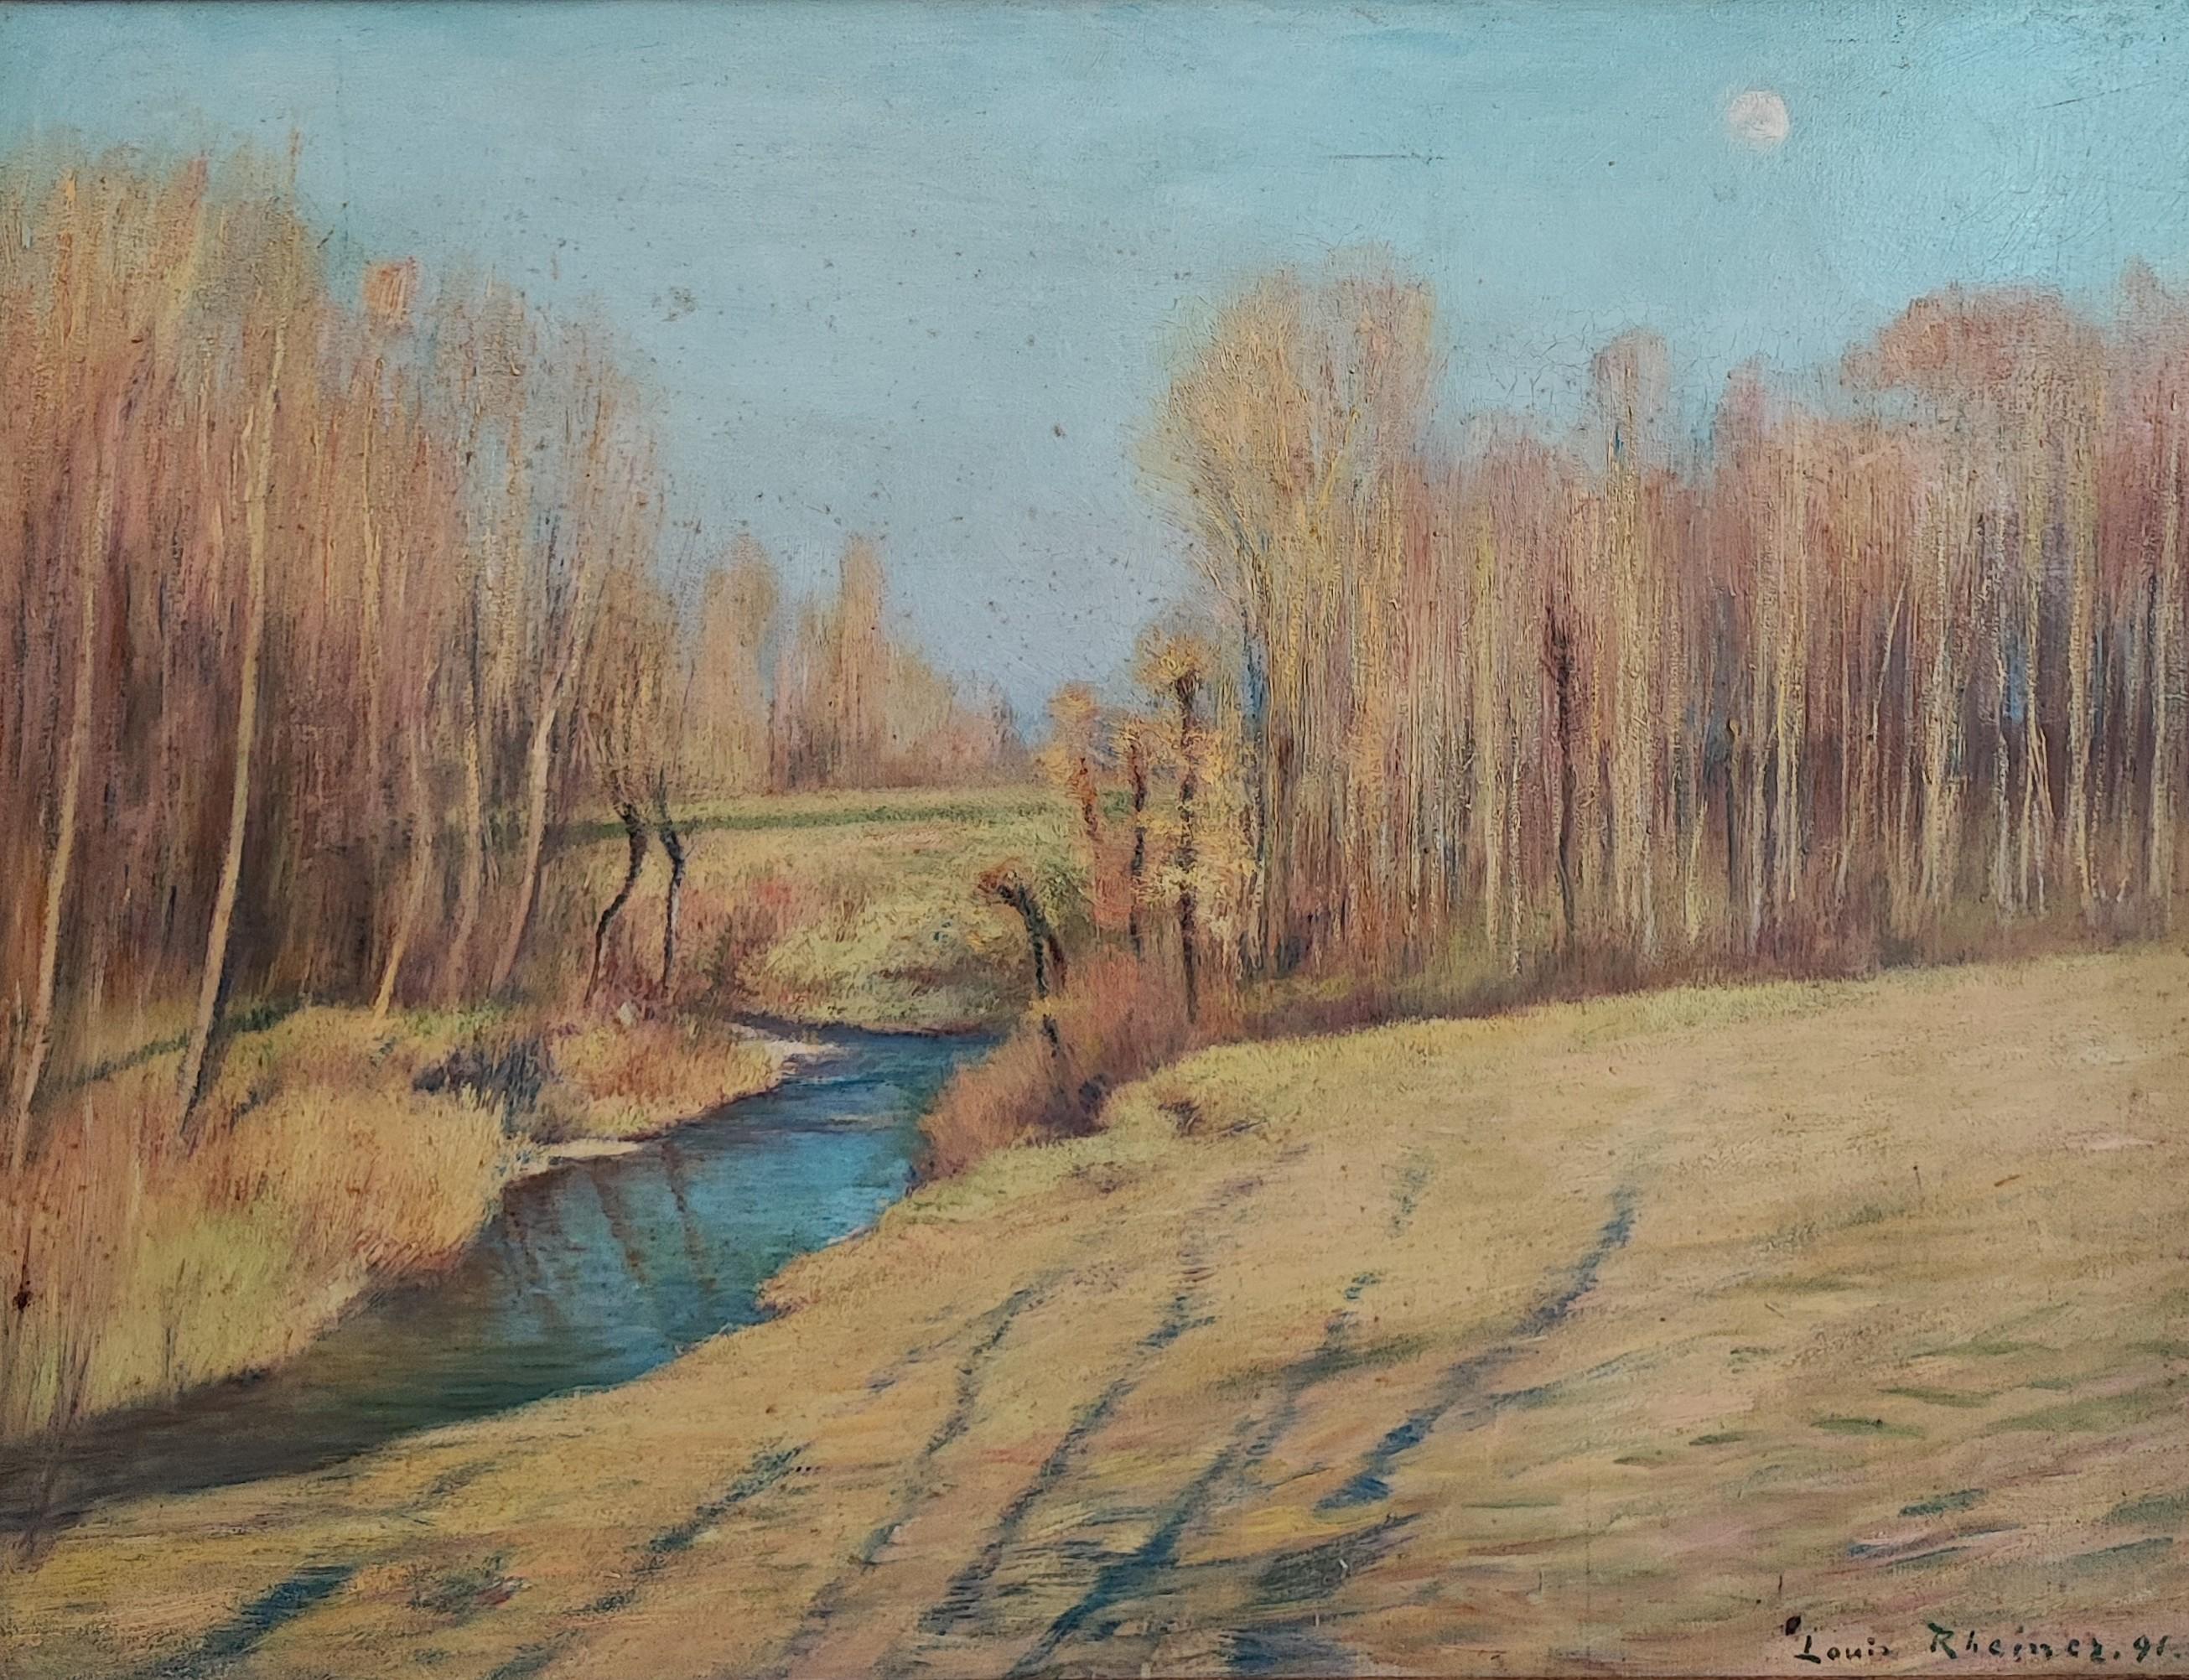 Landscape Painting Louis Rheiner - Paysage du lac